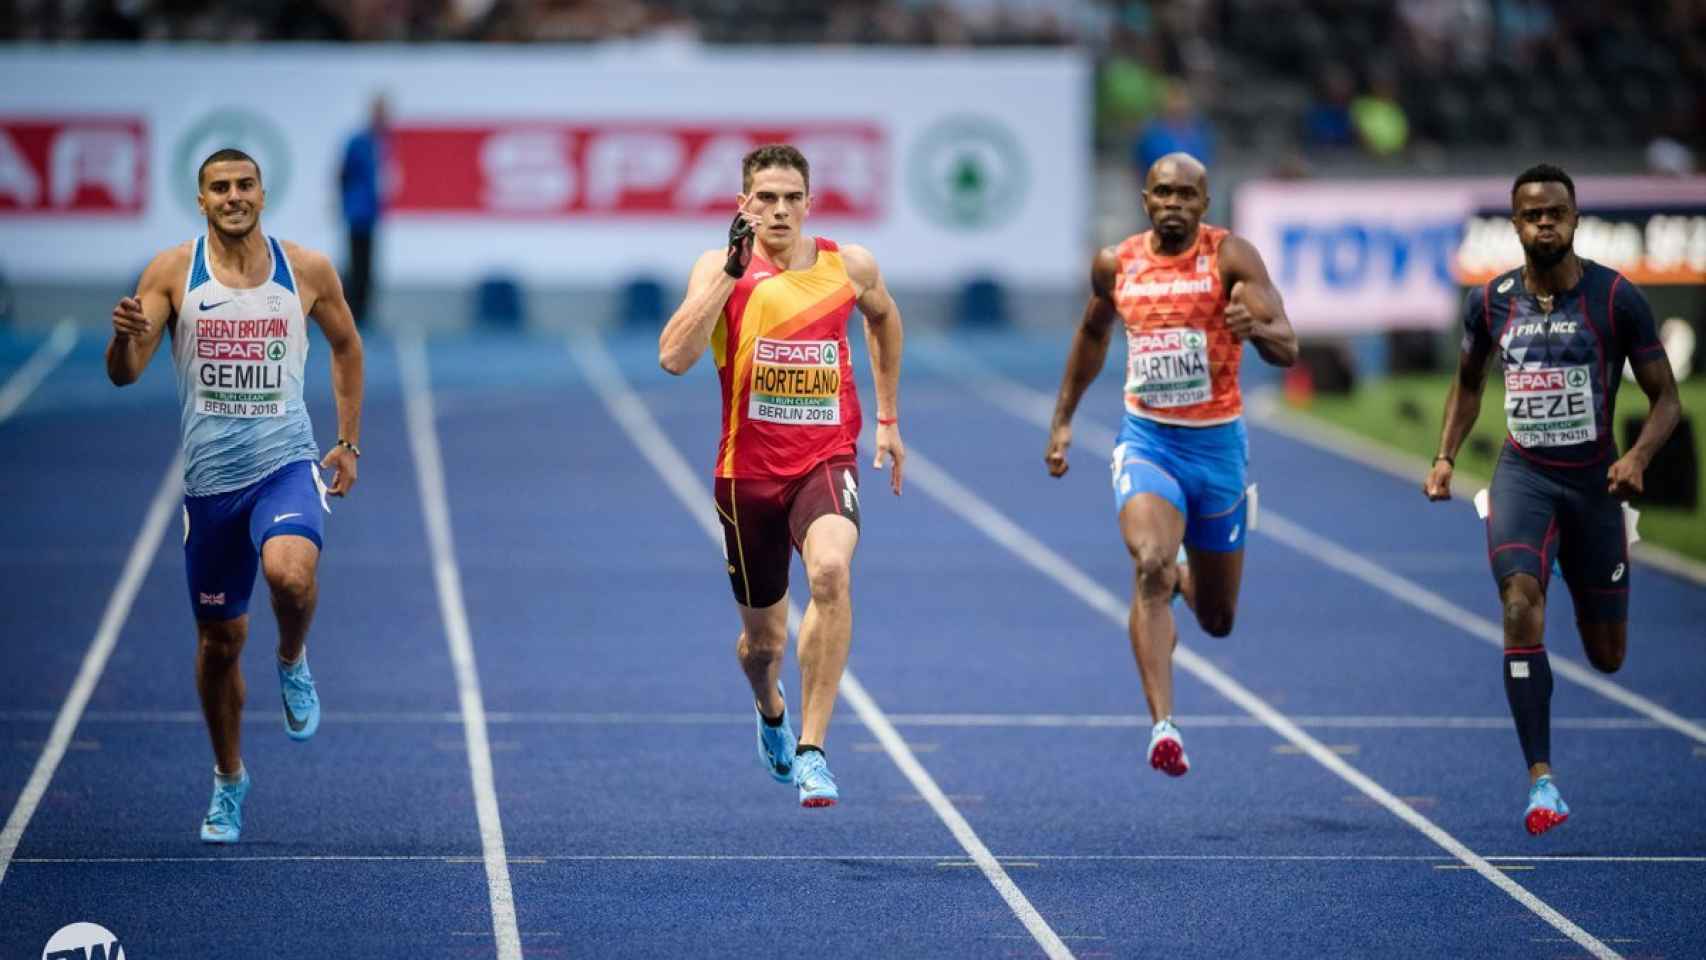 Hortelano, durante la semifinal del 200m en el Estadio Olímpico de Berlín.